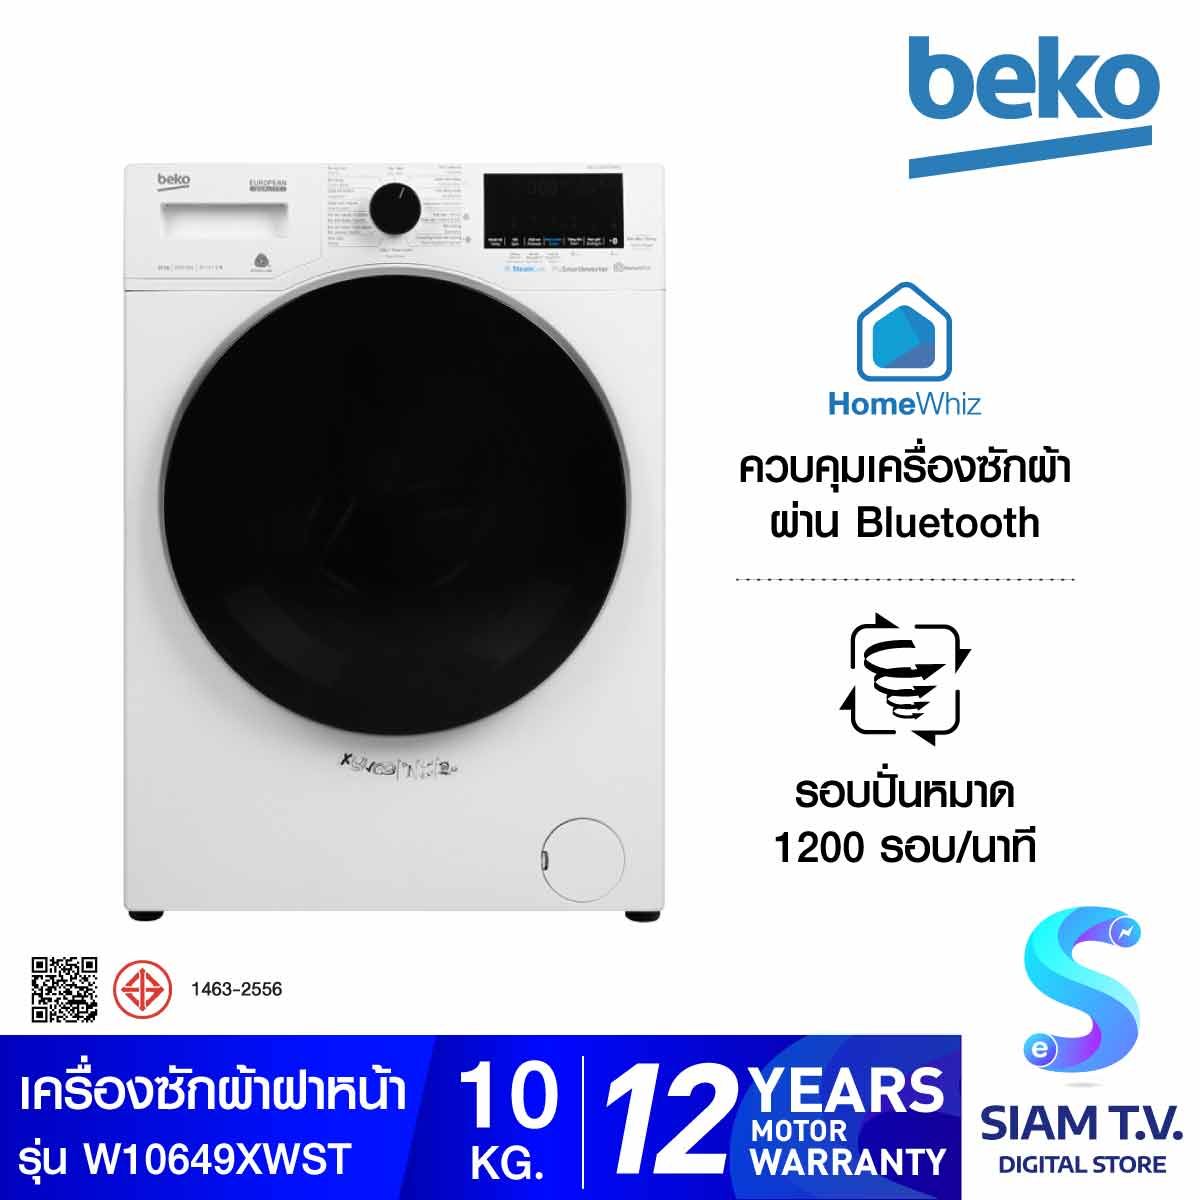 BEKO เครื่องซักผ้าฝาหน้า Inverter 10 กก.  สีขาว รุ่น WCV10649XWST